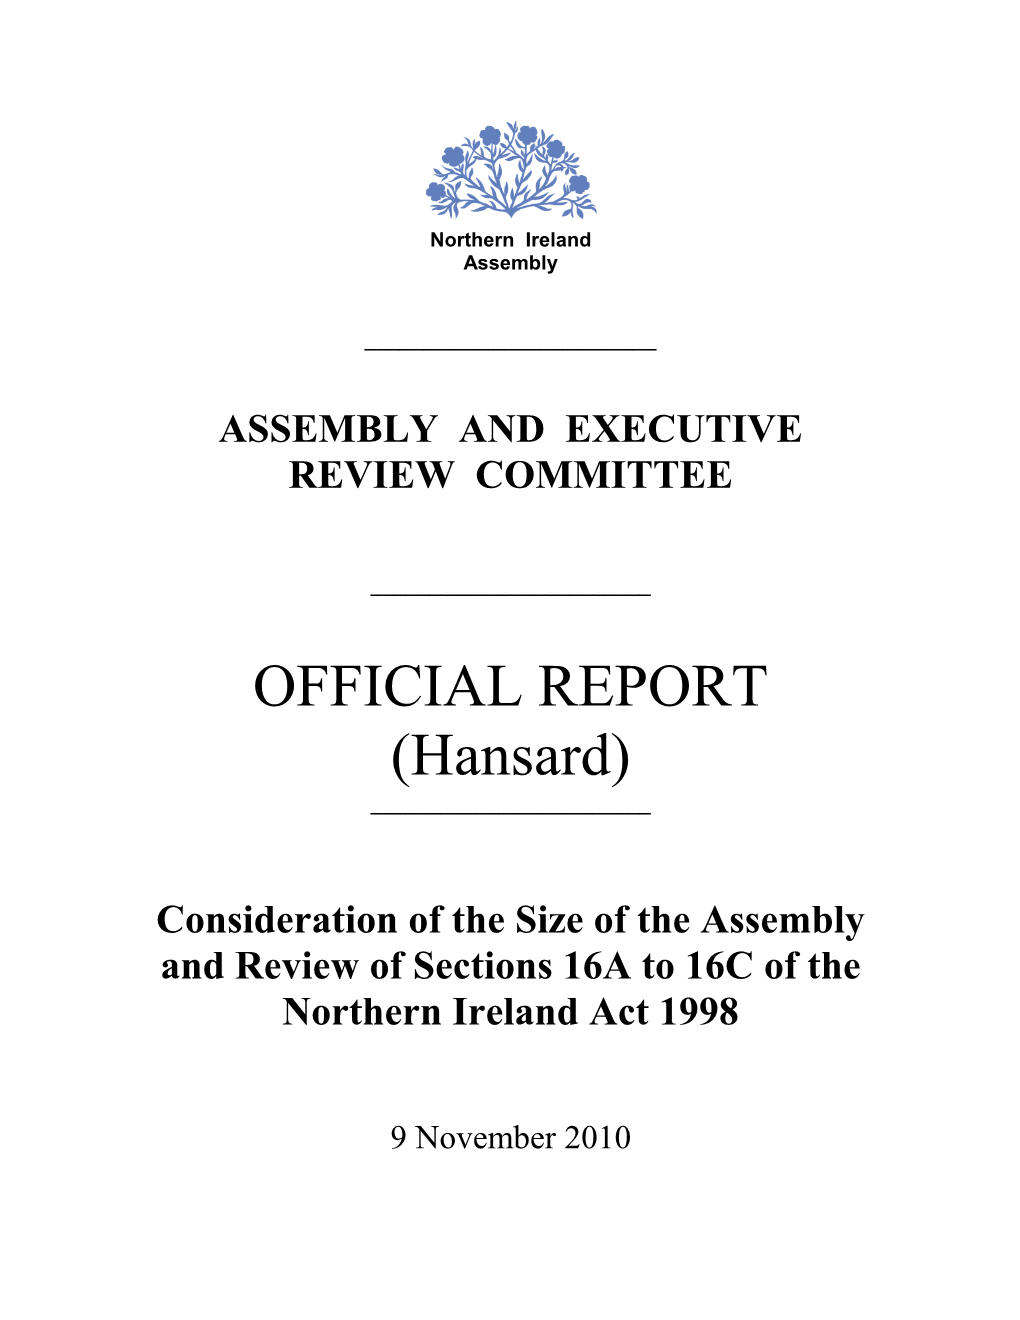 OFFICIAL REPORT (Hansard) ______